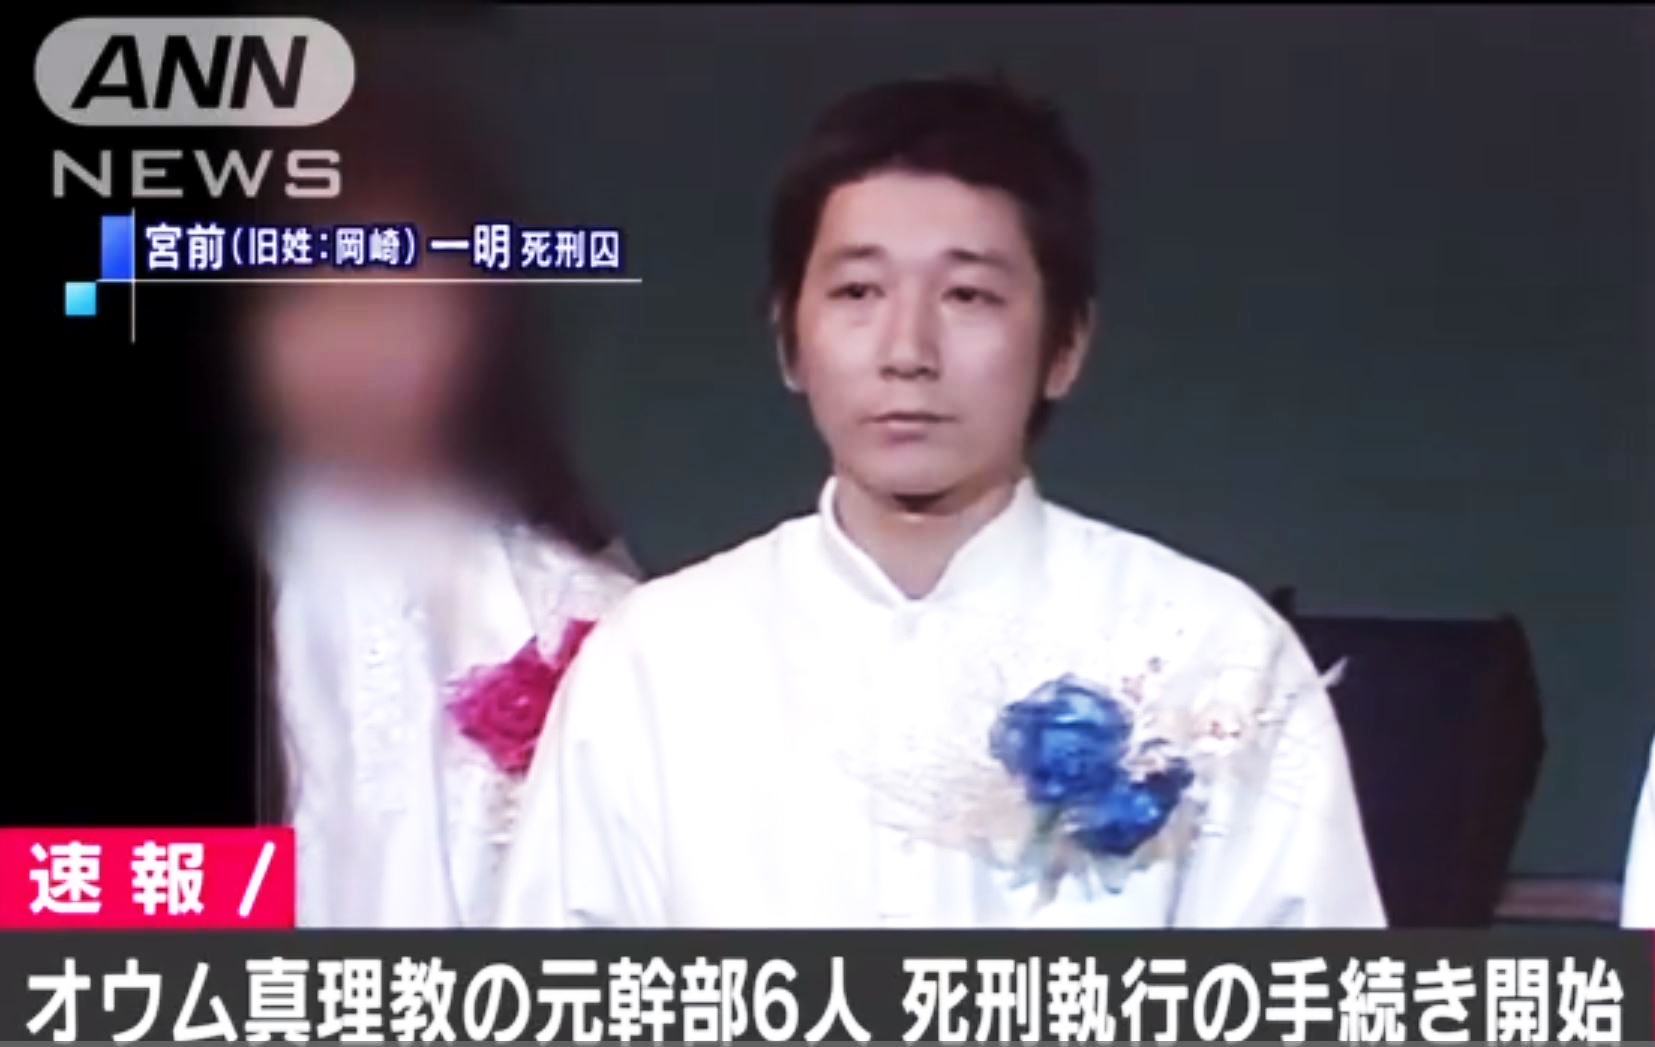 26일 오전 일본 옴진리교 테러 관련 사형수 6명에 대한 사형 집행을 속보로 전하고 있는 TV아사히 뉴스. TV아사히 화면 캡처